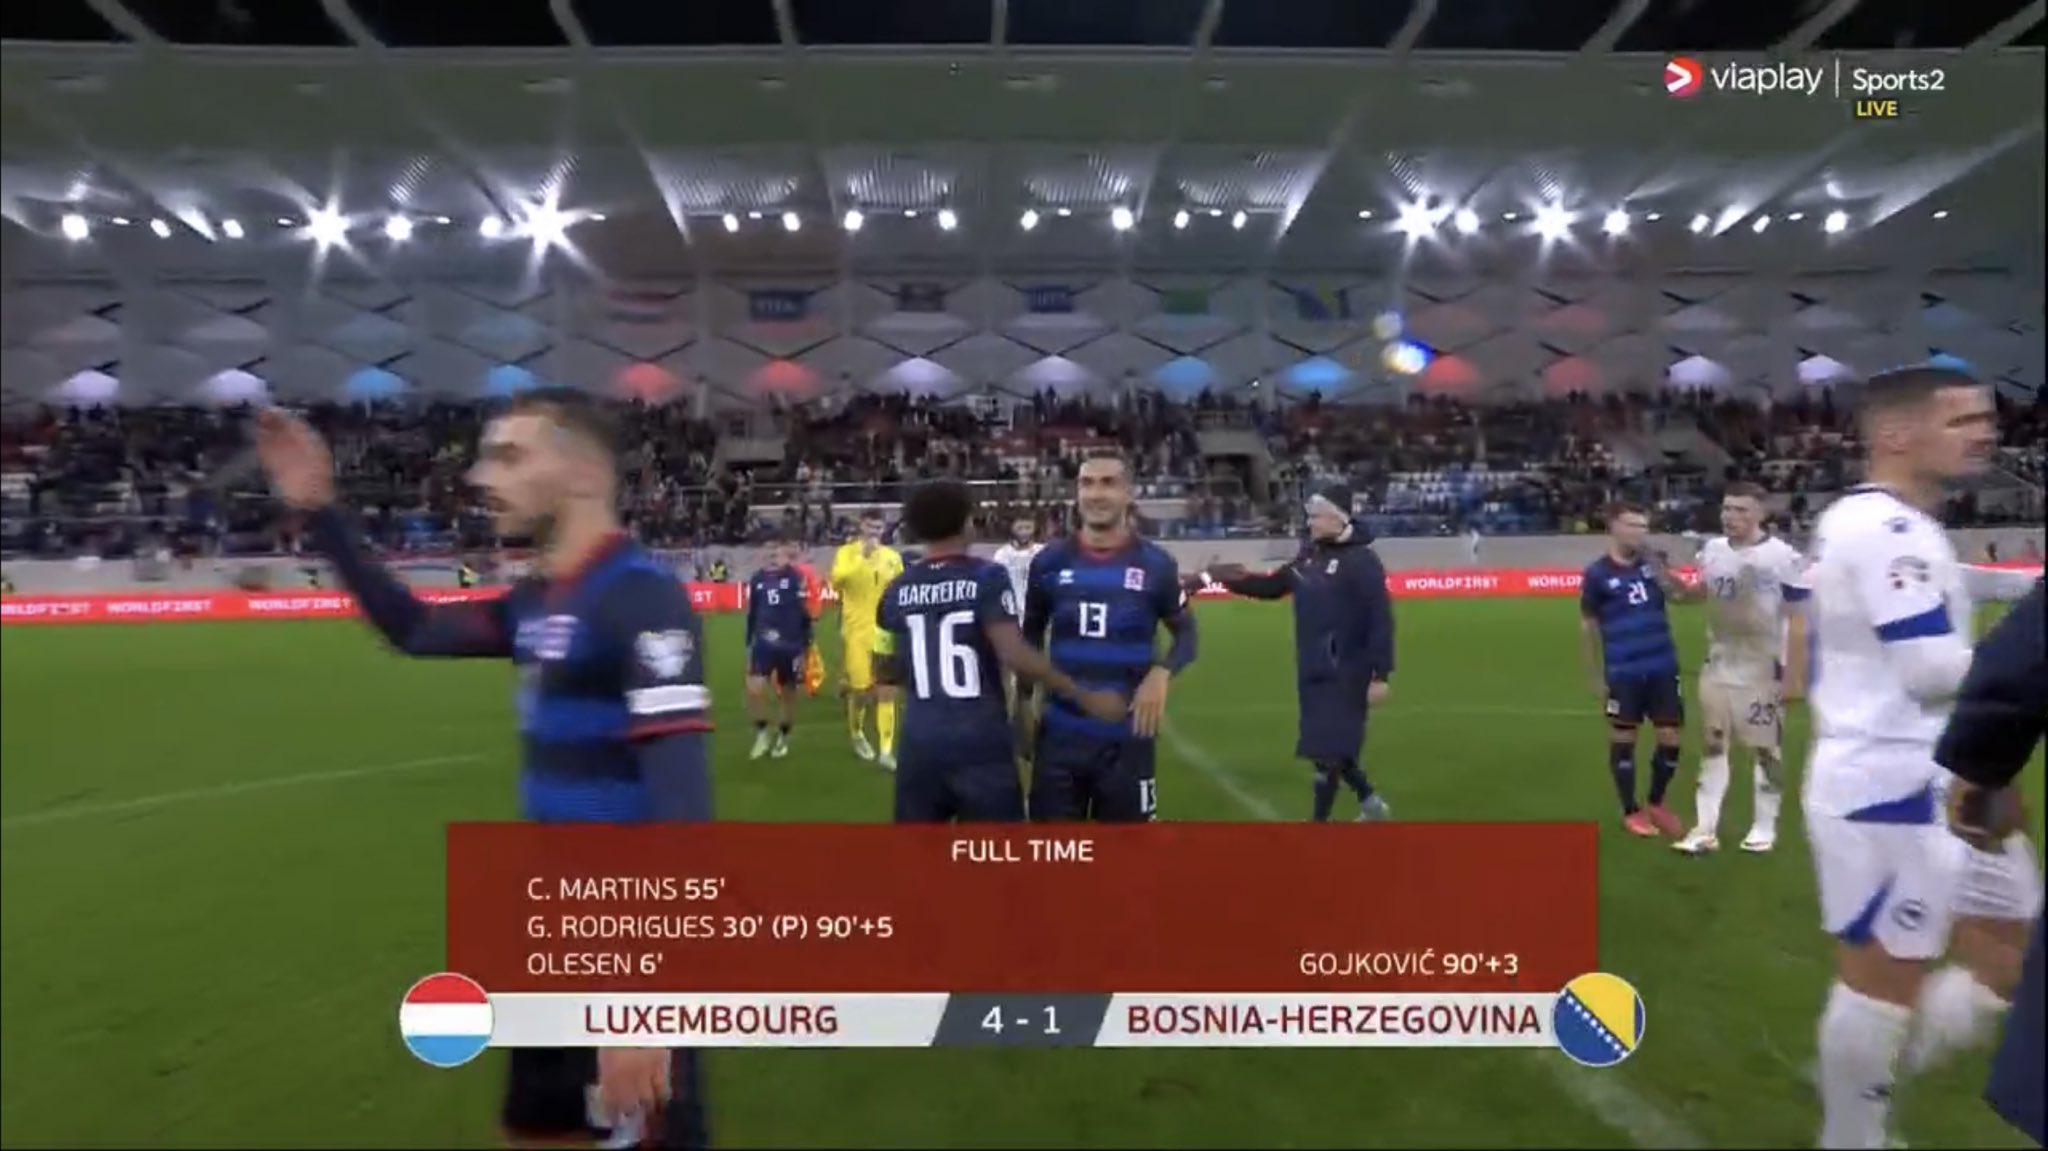 Luksemburgu merr fitore me goleadë dhe siguron vendin në “play off”, rruga për në Europian mund t’i kalojë nga Greqia